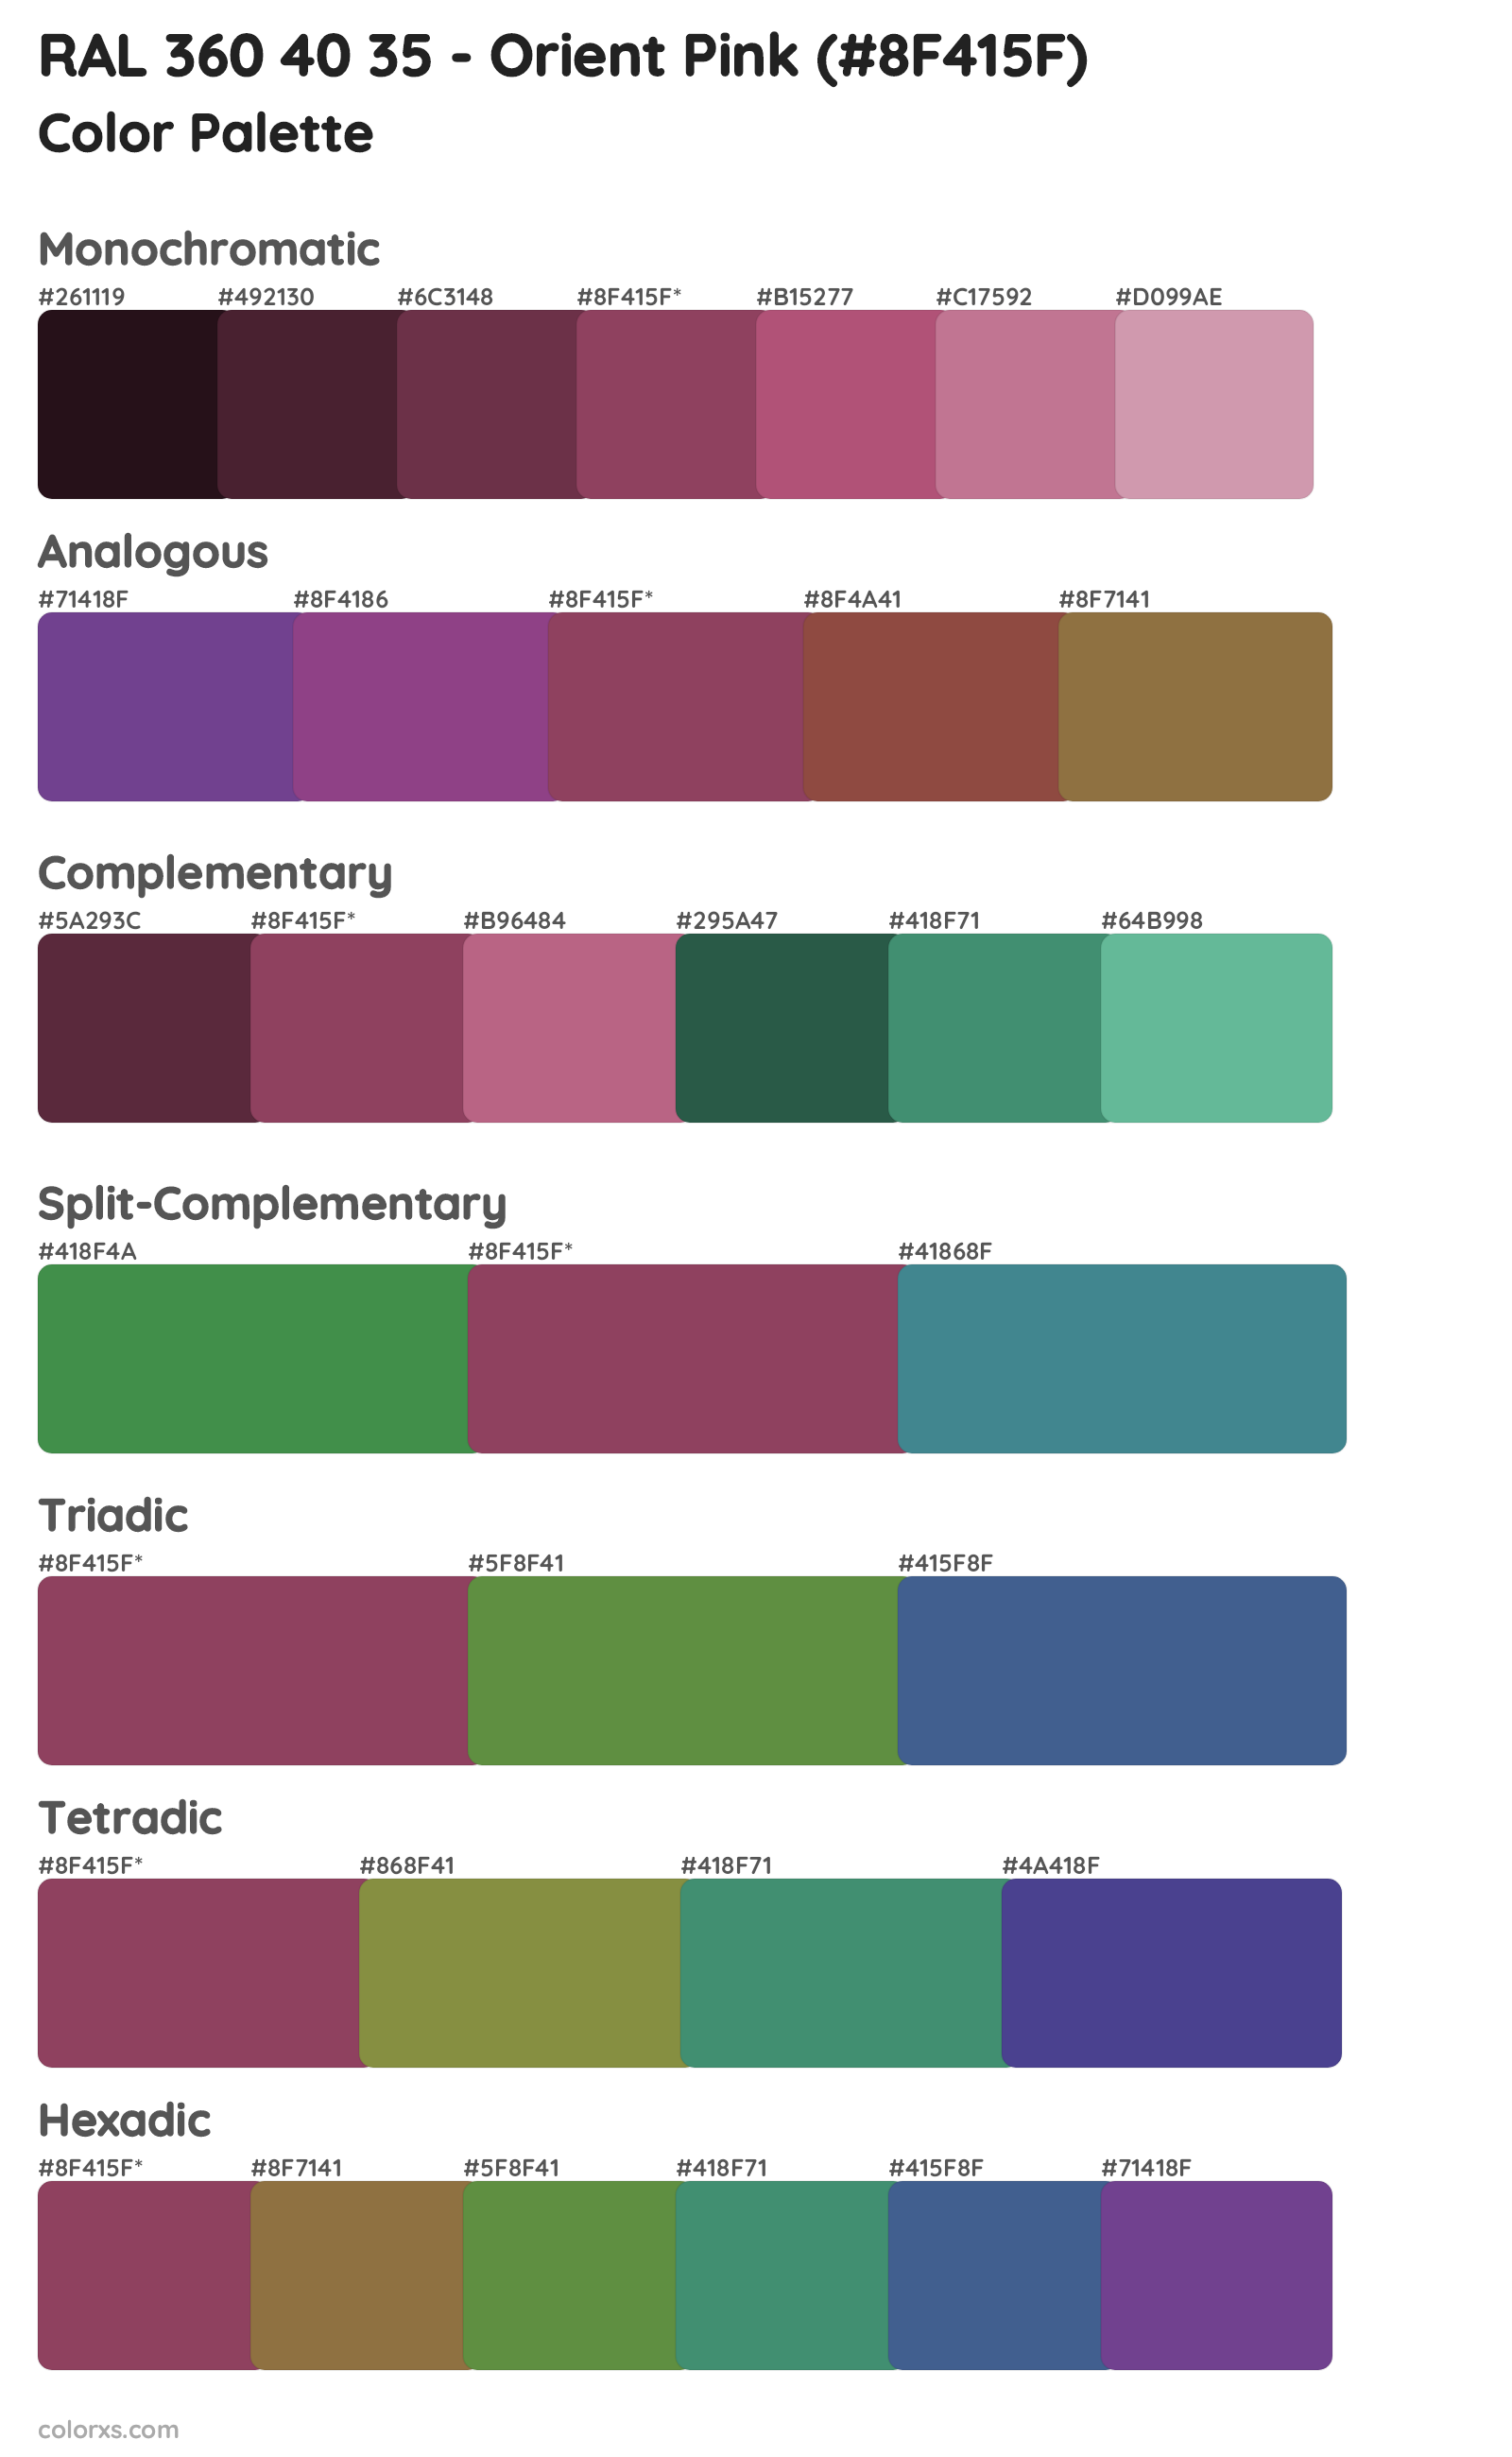 RAL 360 40 35 - Orient Pink Color Scheme Palettes